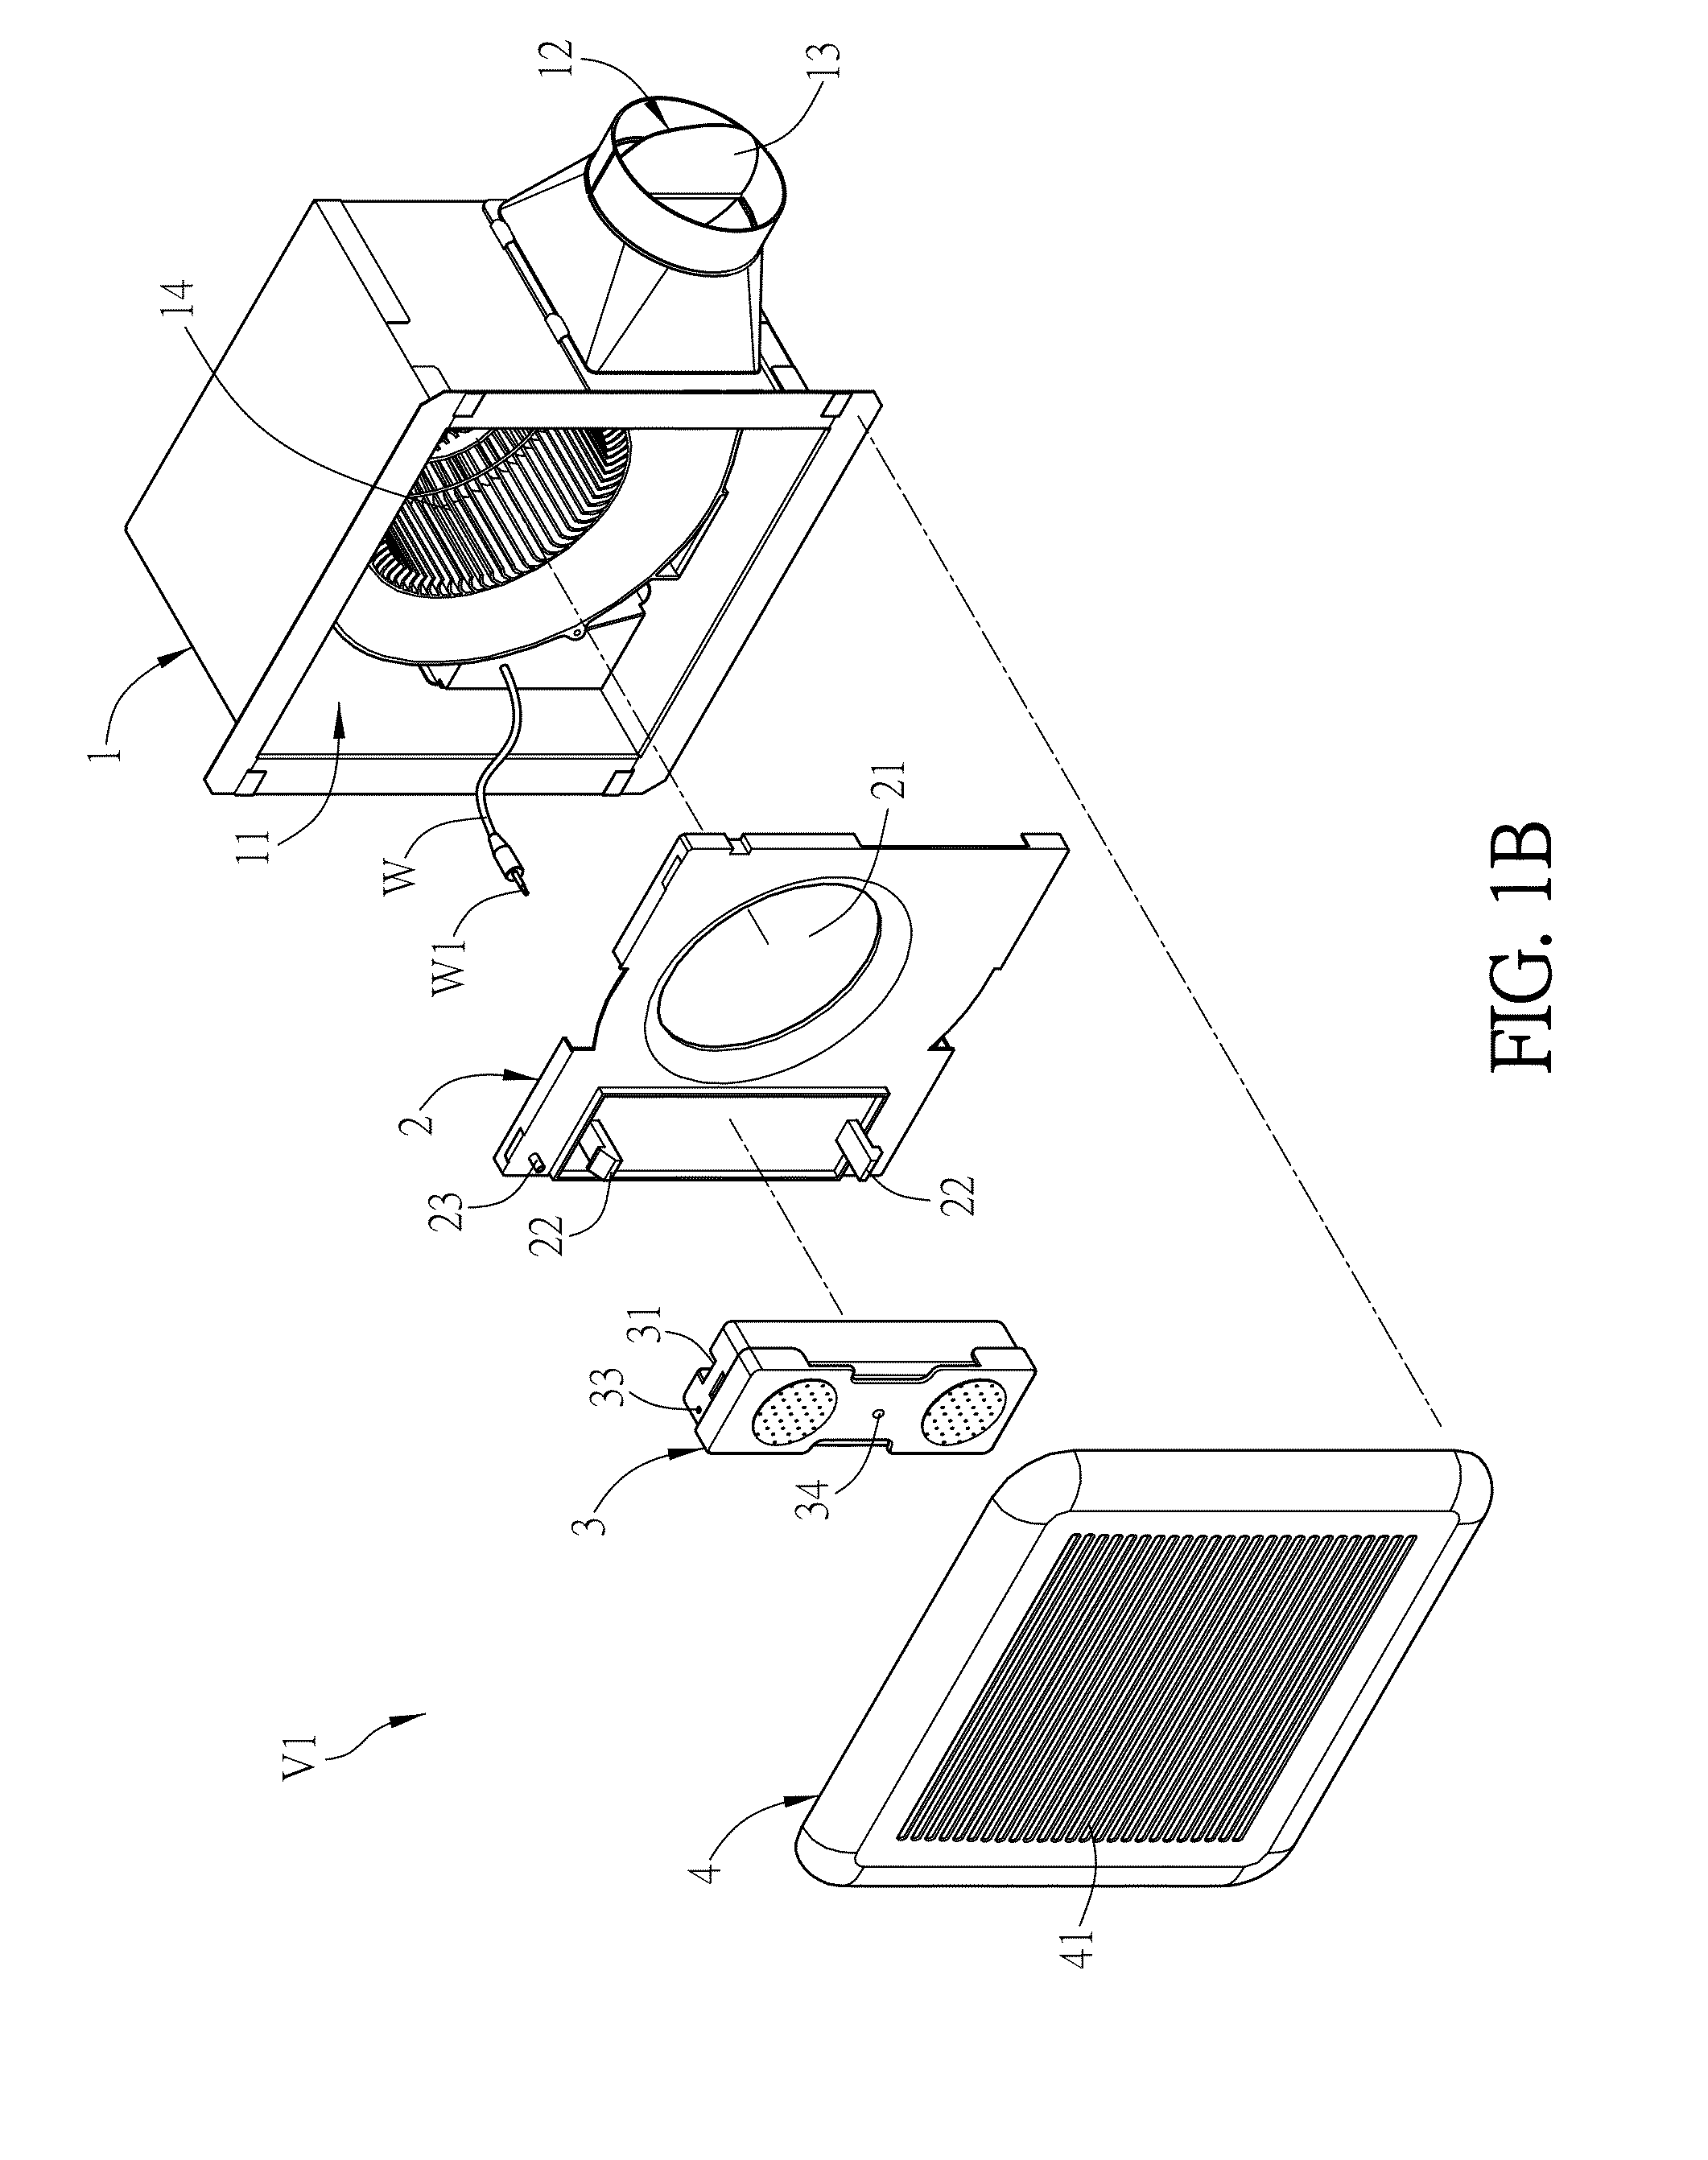 Ventilation fan with speaker